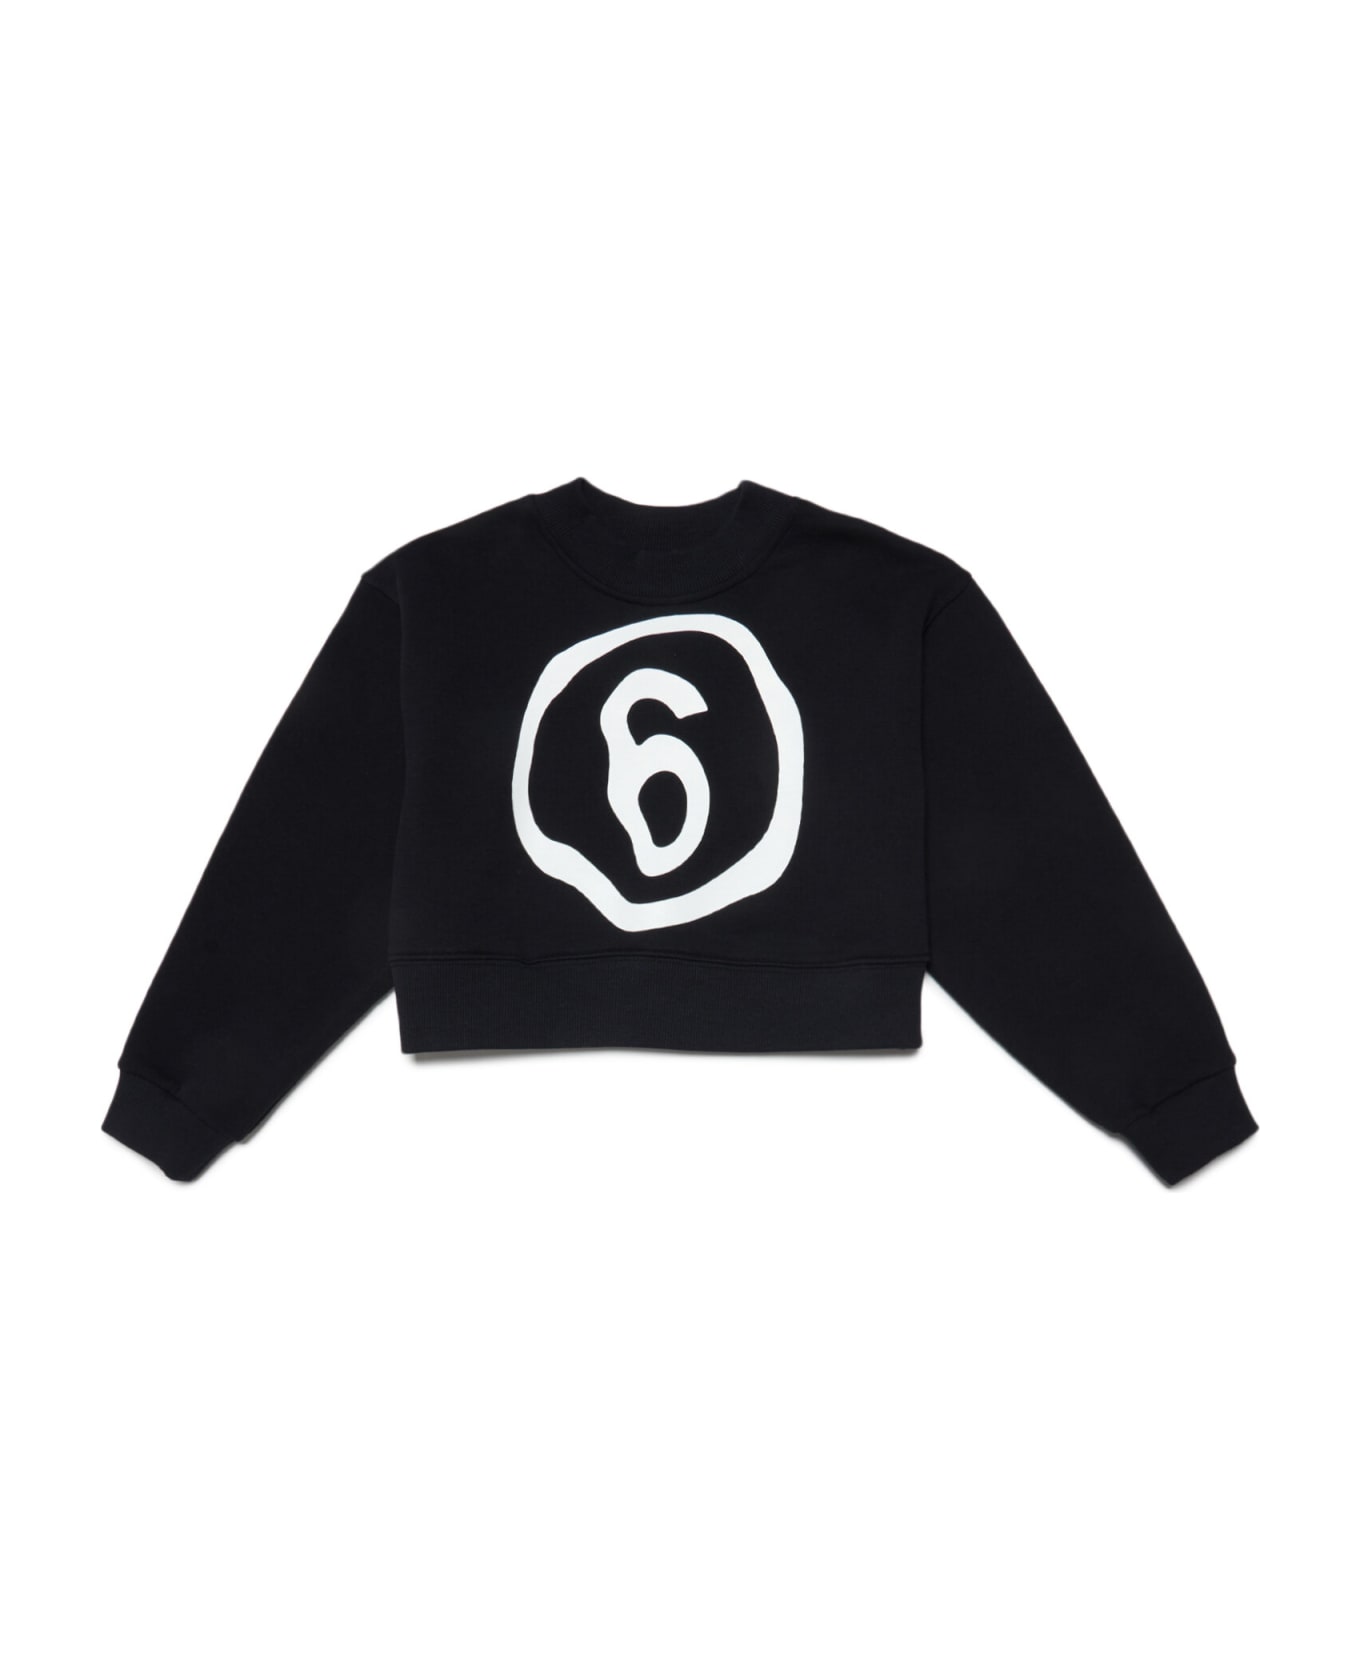 MM6 Maison Margiela Mm6s53u Sweat-shirt Maison Margiela Black Cropped Crew-neck Cotton Sweatshirt With Fluid Effect Logo - Nero ニットウェア＆スウェットシャツ